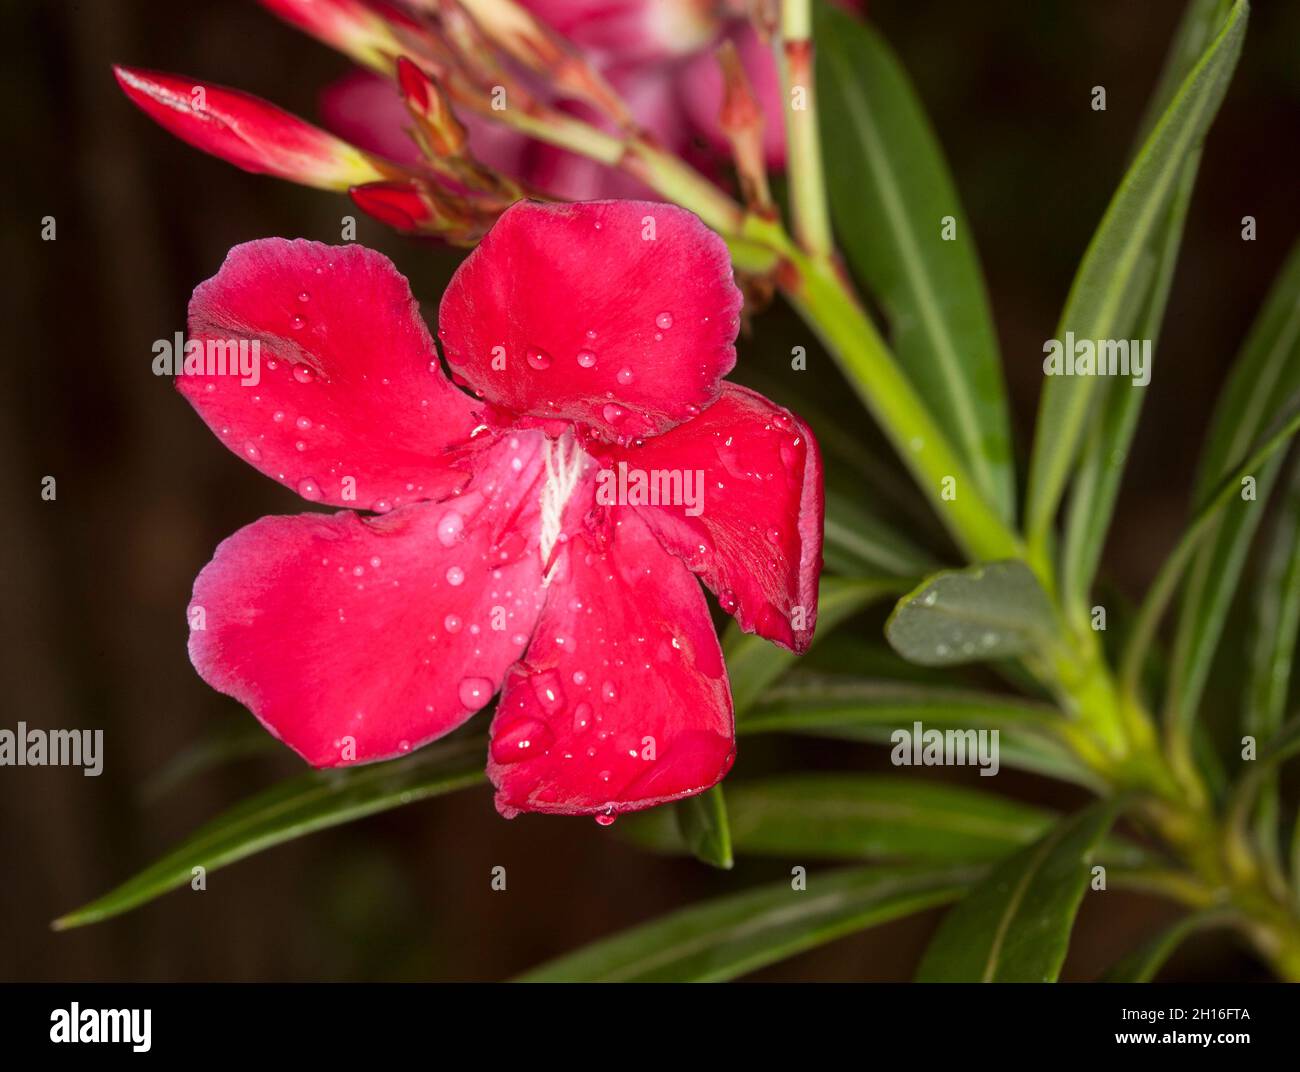 Lebhaft rote Blüte, Knospen und grüne Blätter von Nerium Oleander 'Monrovia Red', einem immergrünen Strauch mit giftigem saft, auf dunklem Grund, in Australien Stockfoto